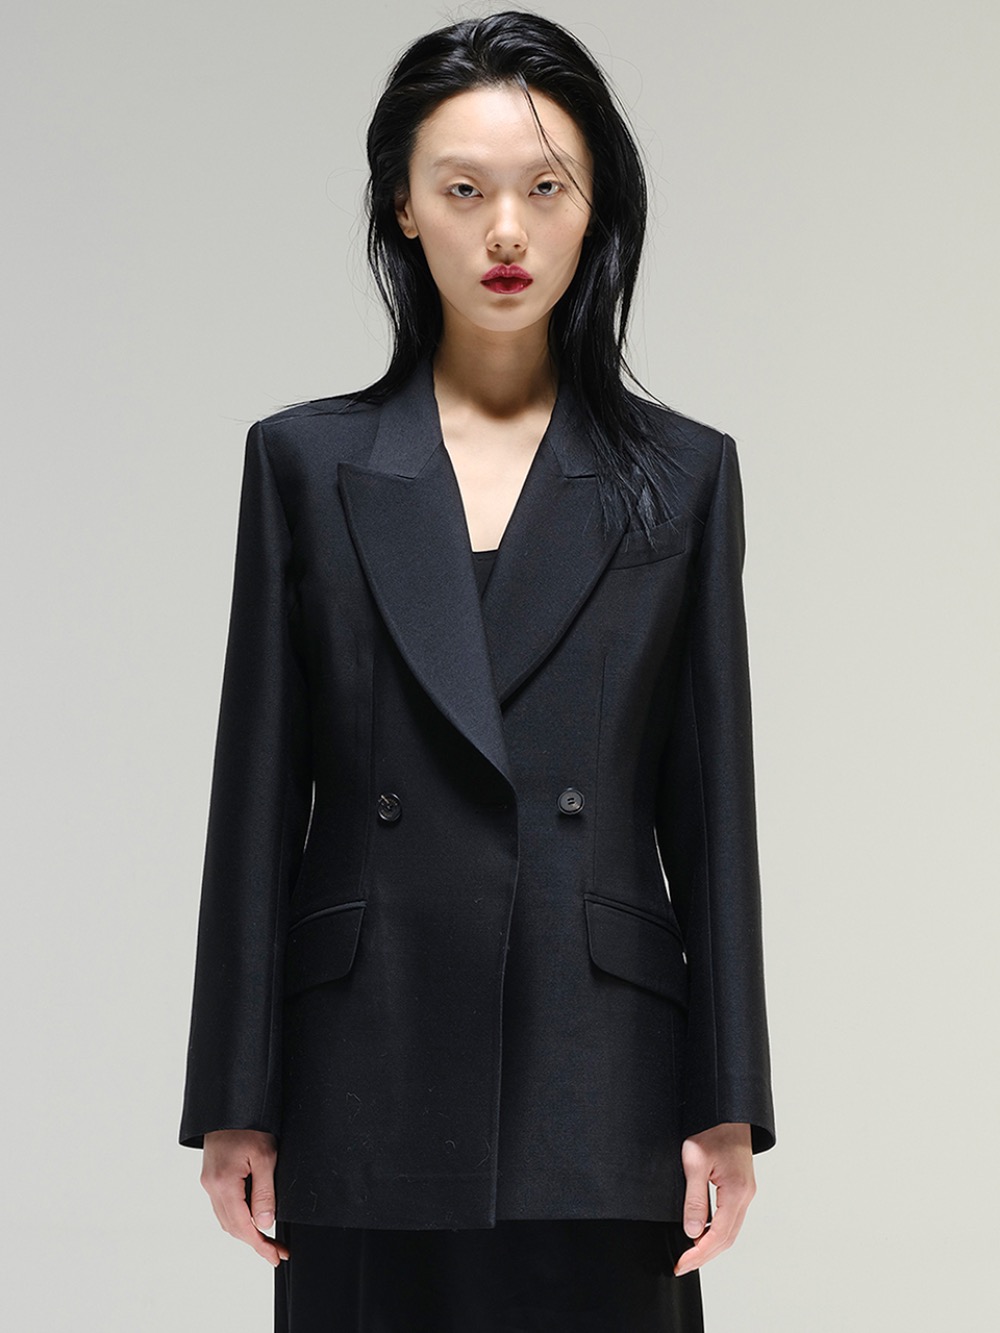 Wool-silk tuxedo jacket in black